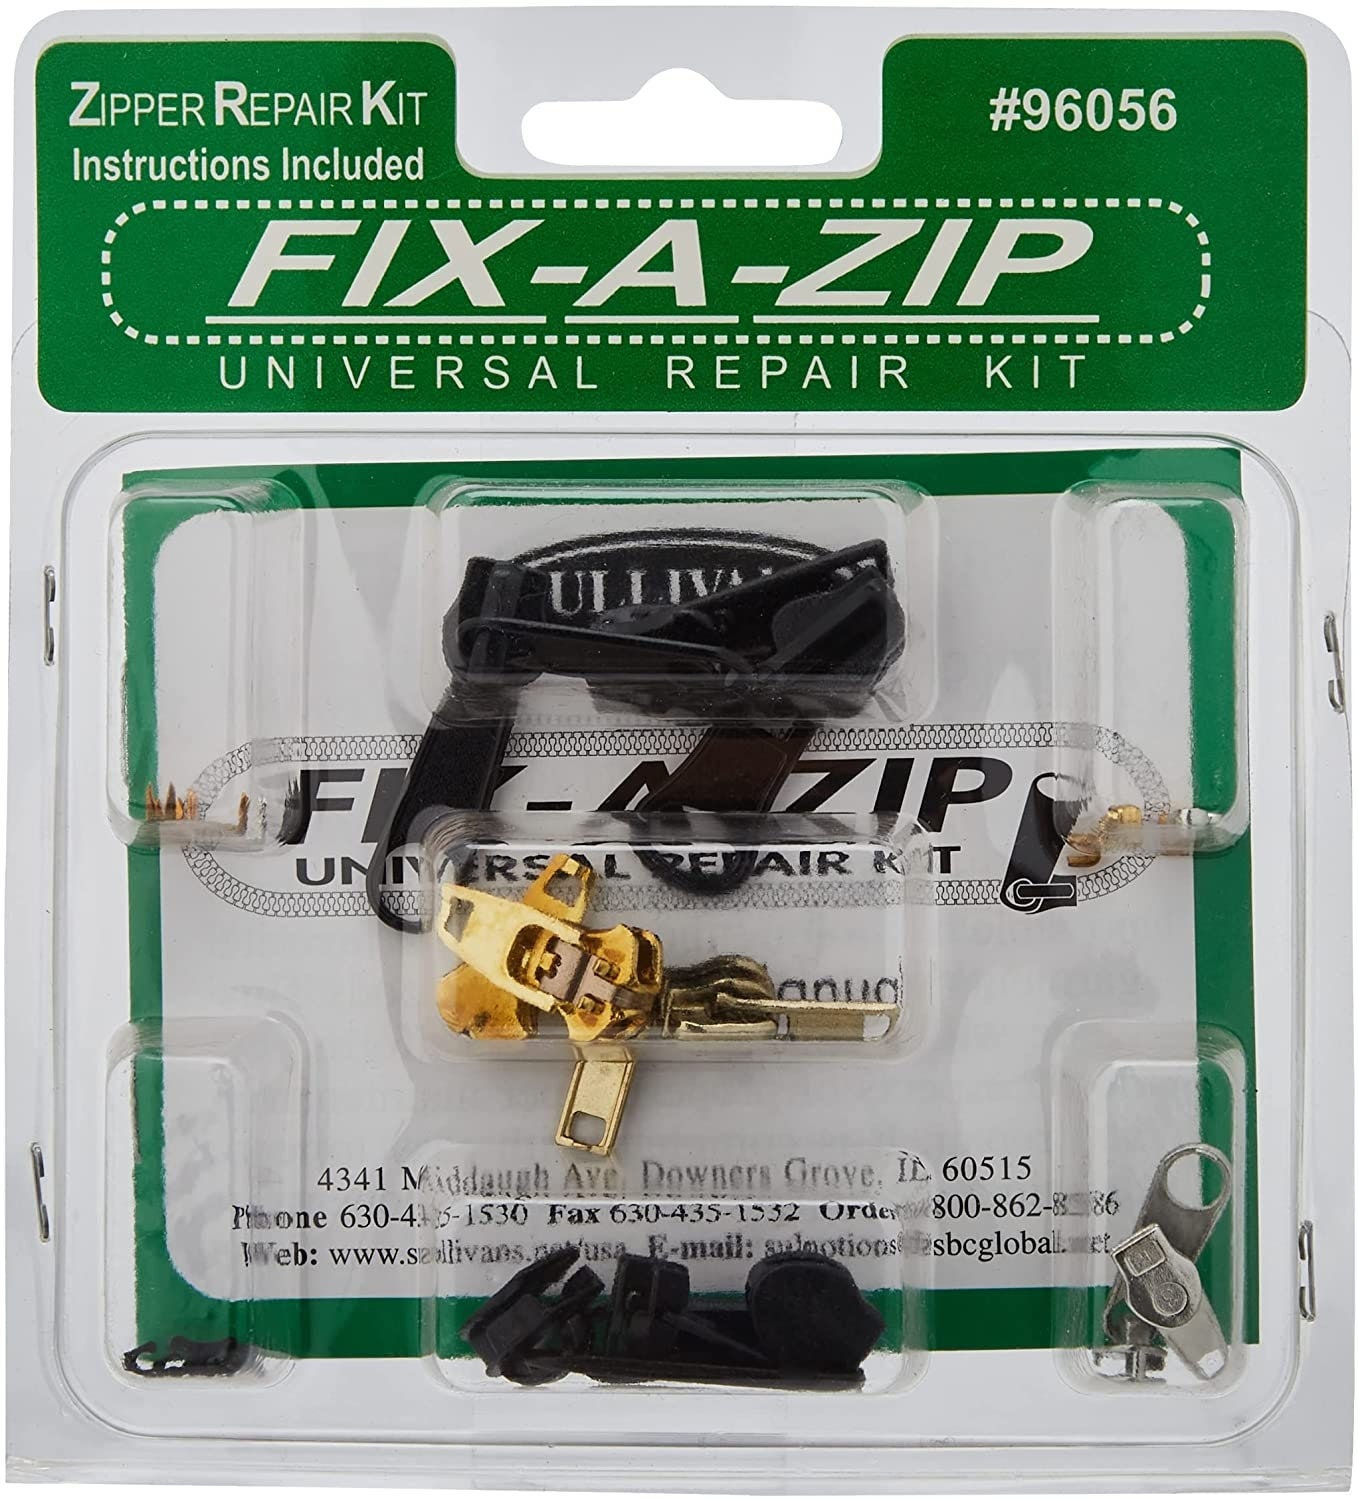 Zipper Repair Parts for Sale Online